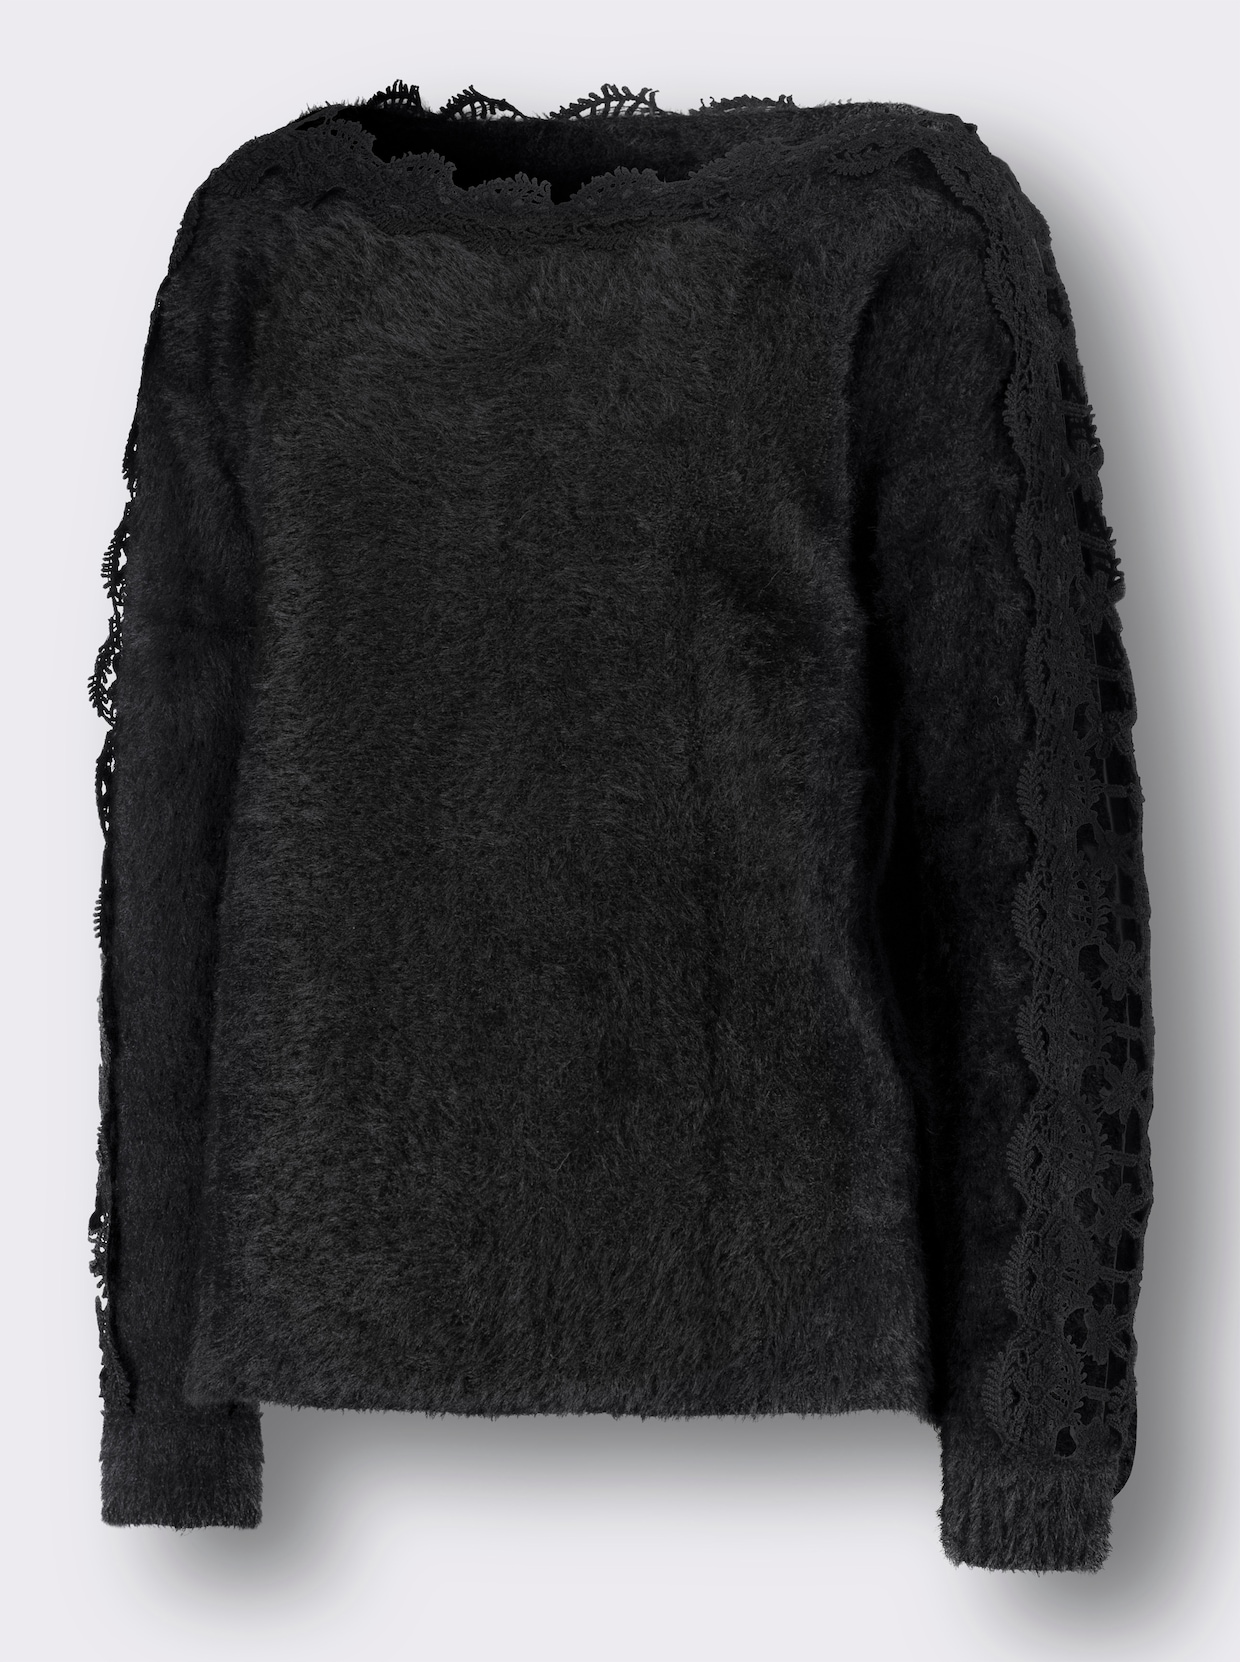 Langarm-Pullover - schwarz